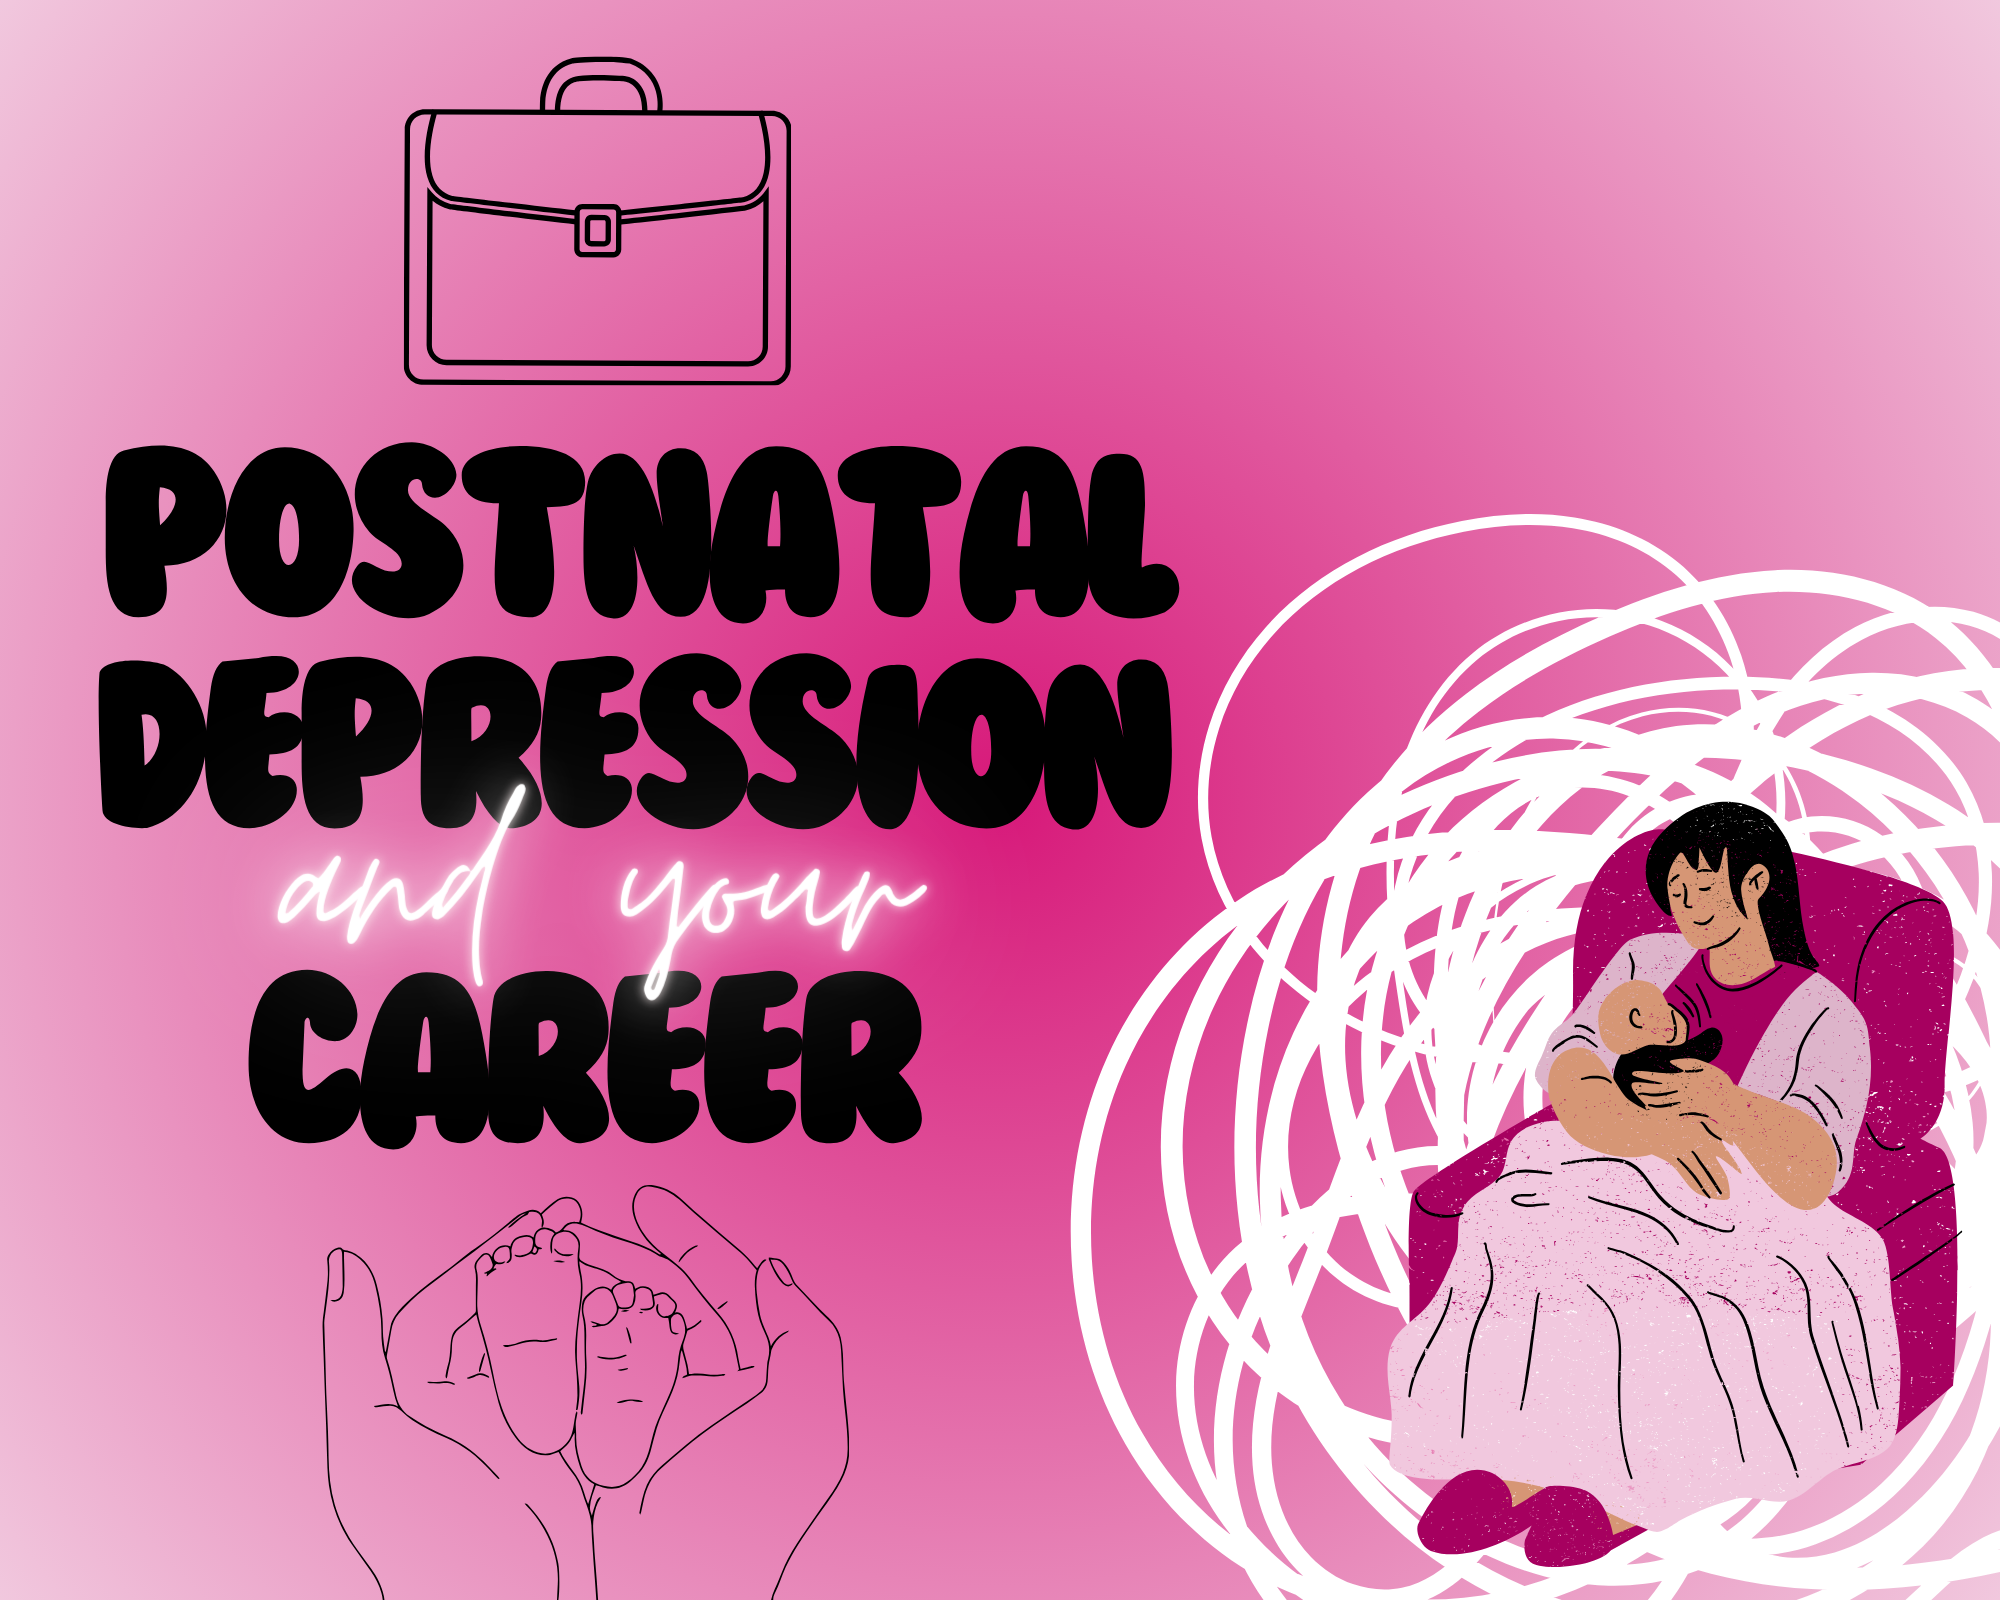 Image: postnatal depression text